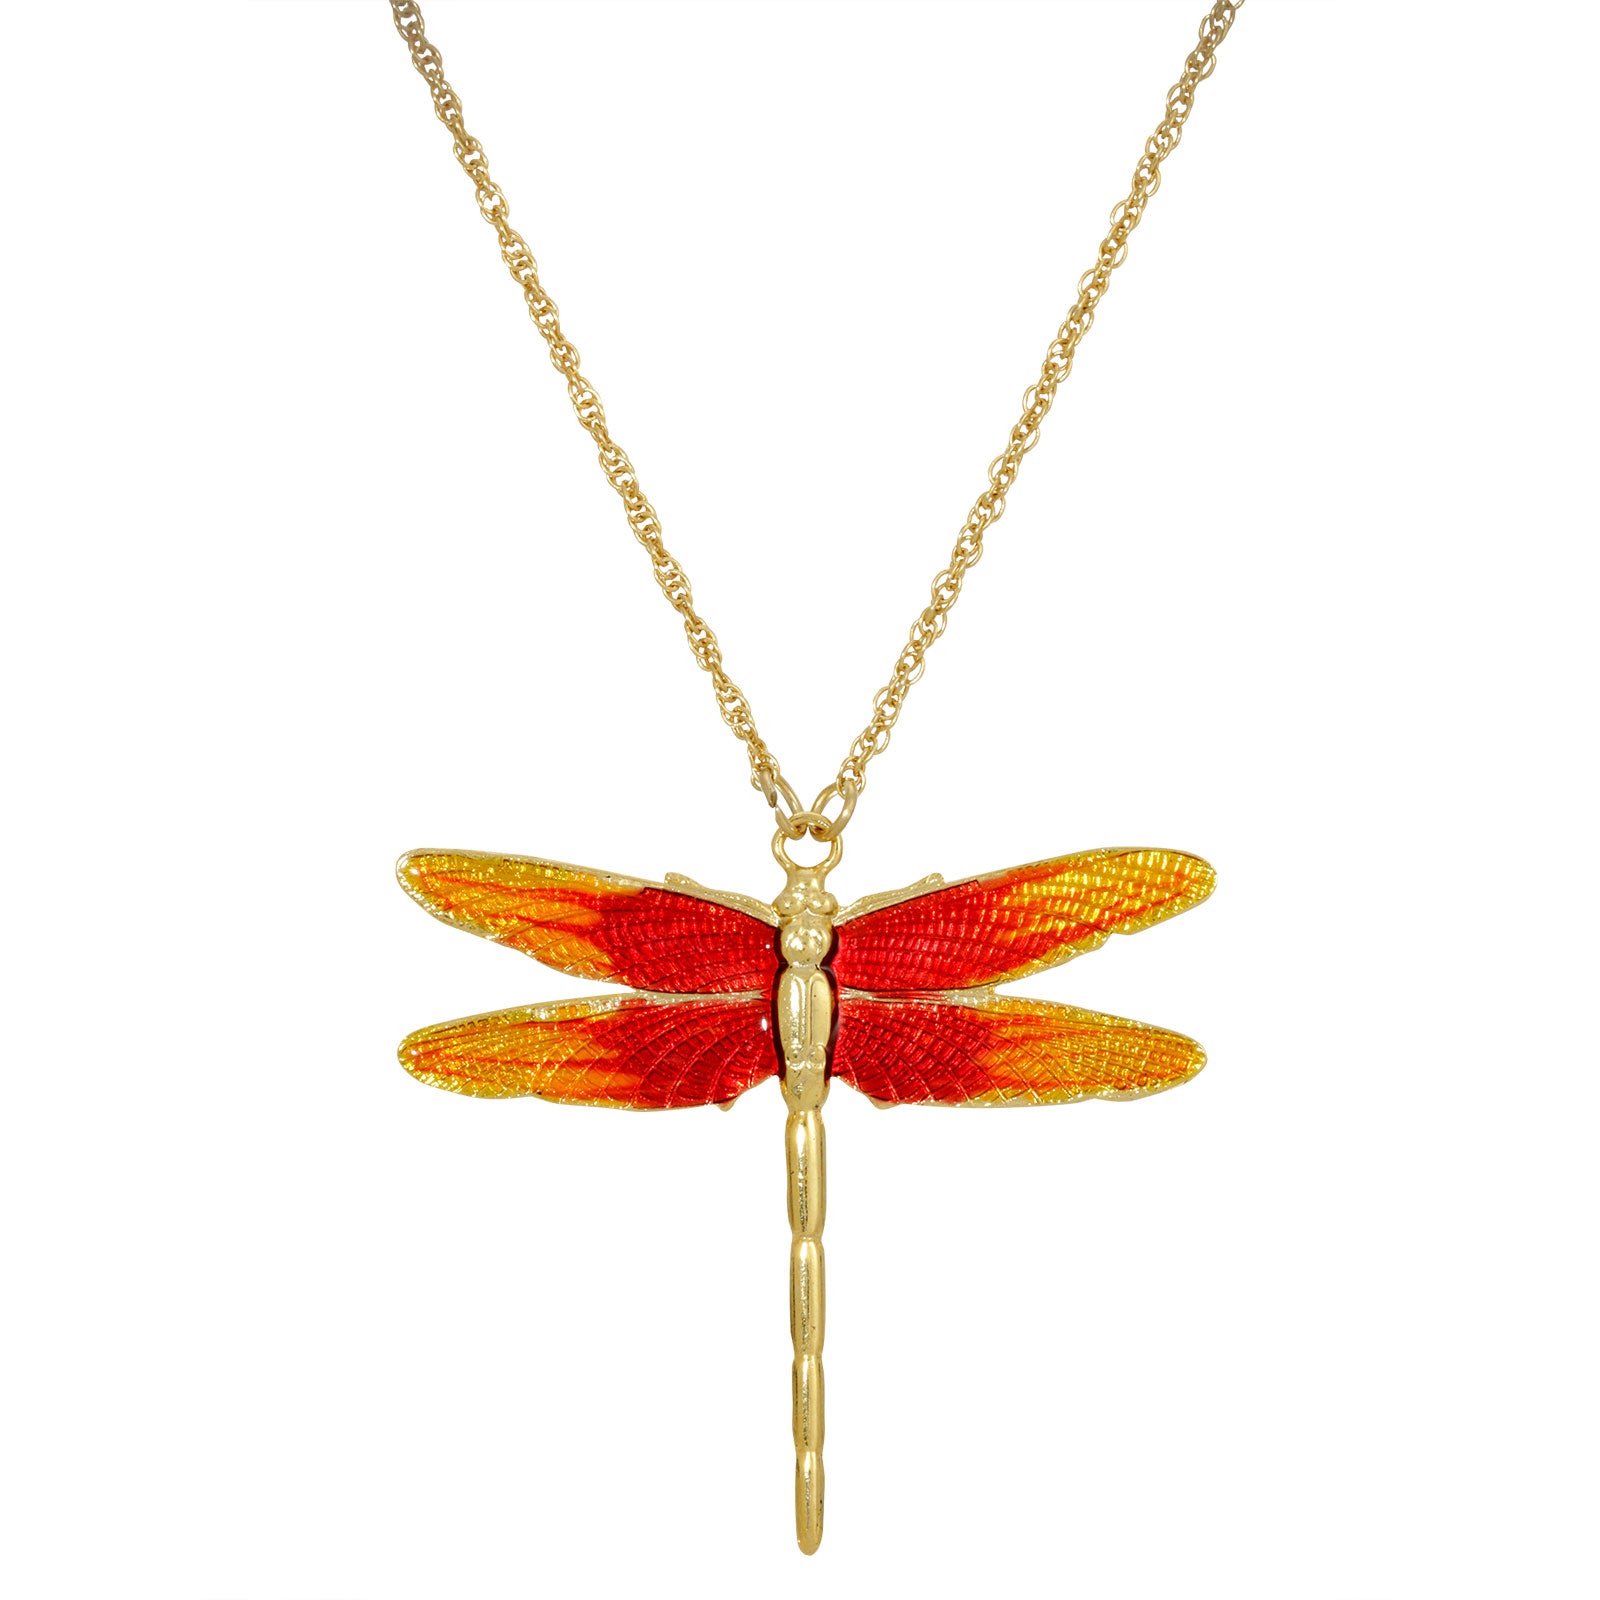 Gold-Tone Orange Enamel Dragonfly Pendant Necklace 16Adj.